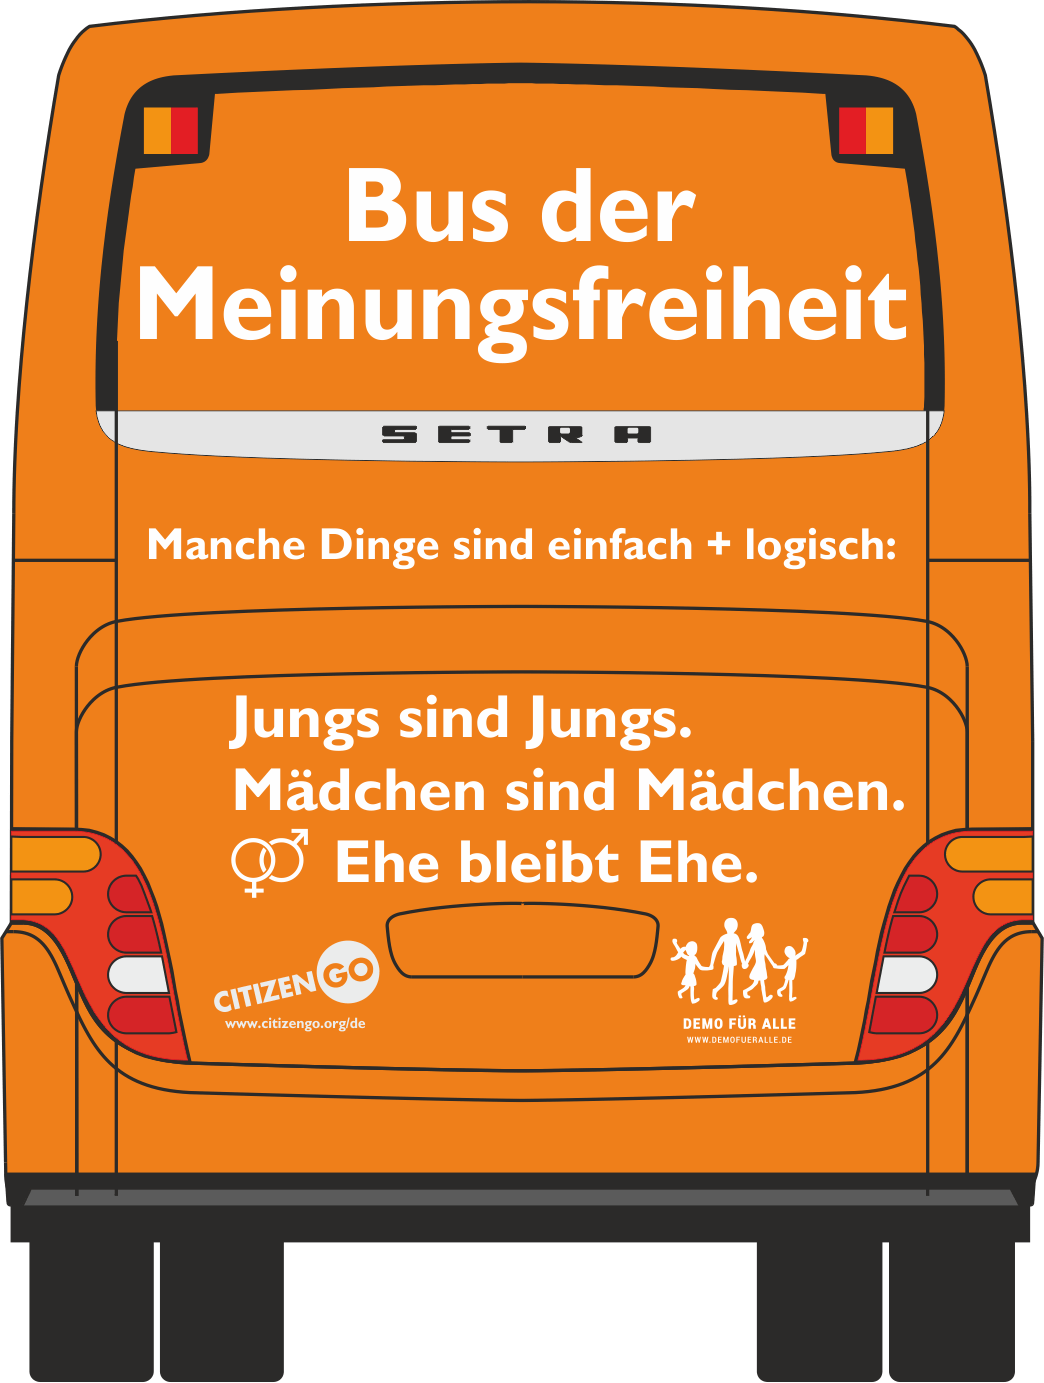 „Bus der Meinungsfreiheit“ startet in München: Seien Sie dabei am Mi., 6. Sep. 15 Uhr am Stachus/Karlsplatz!